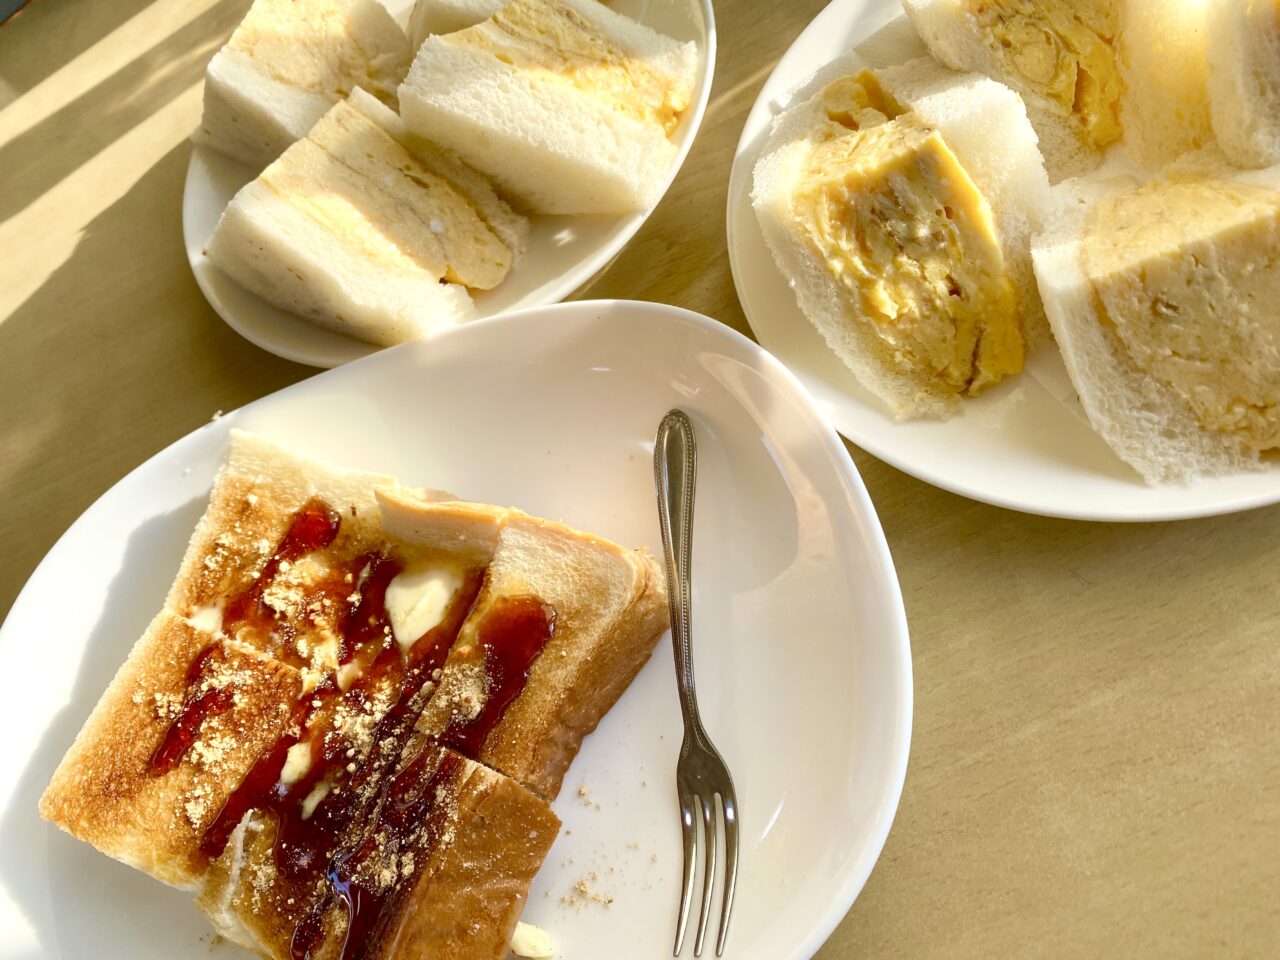 大阪府堺市のららぽーと堺近くのカフェはたちのたまごサンドと黒蜜きな粉トースト